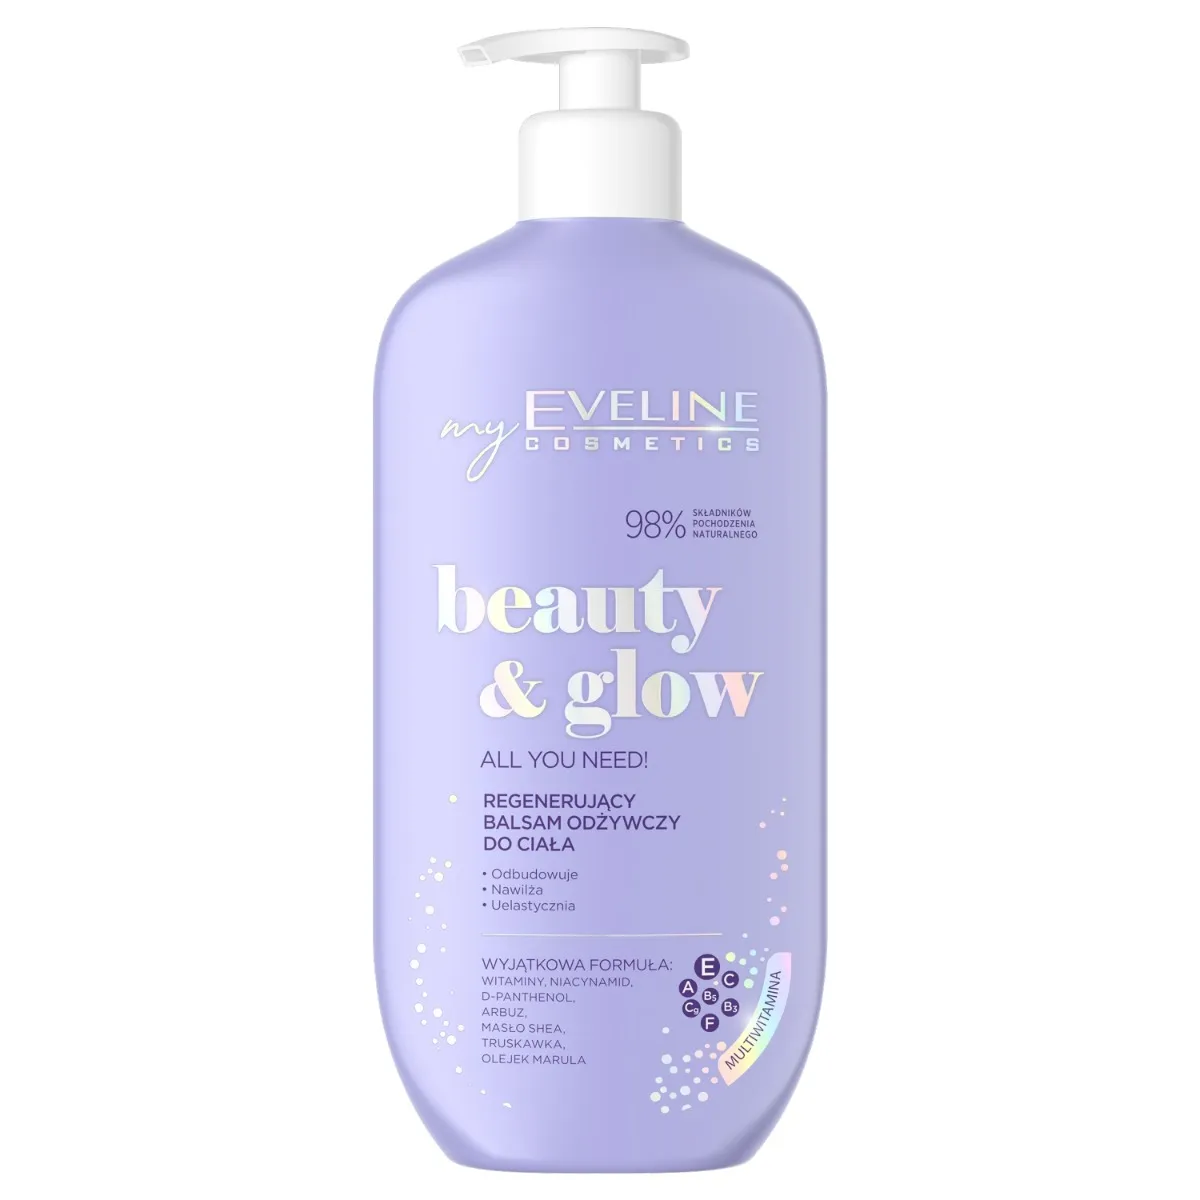 Eveline Cosmetics Beauty & Glow regenerujący balsam odżywczy do ciała, 350 ml